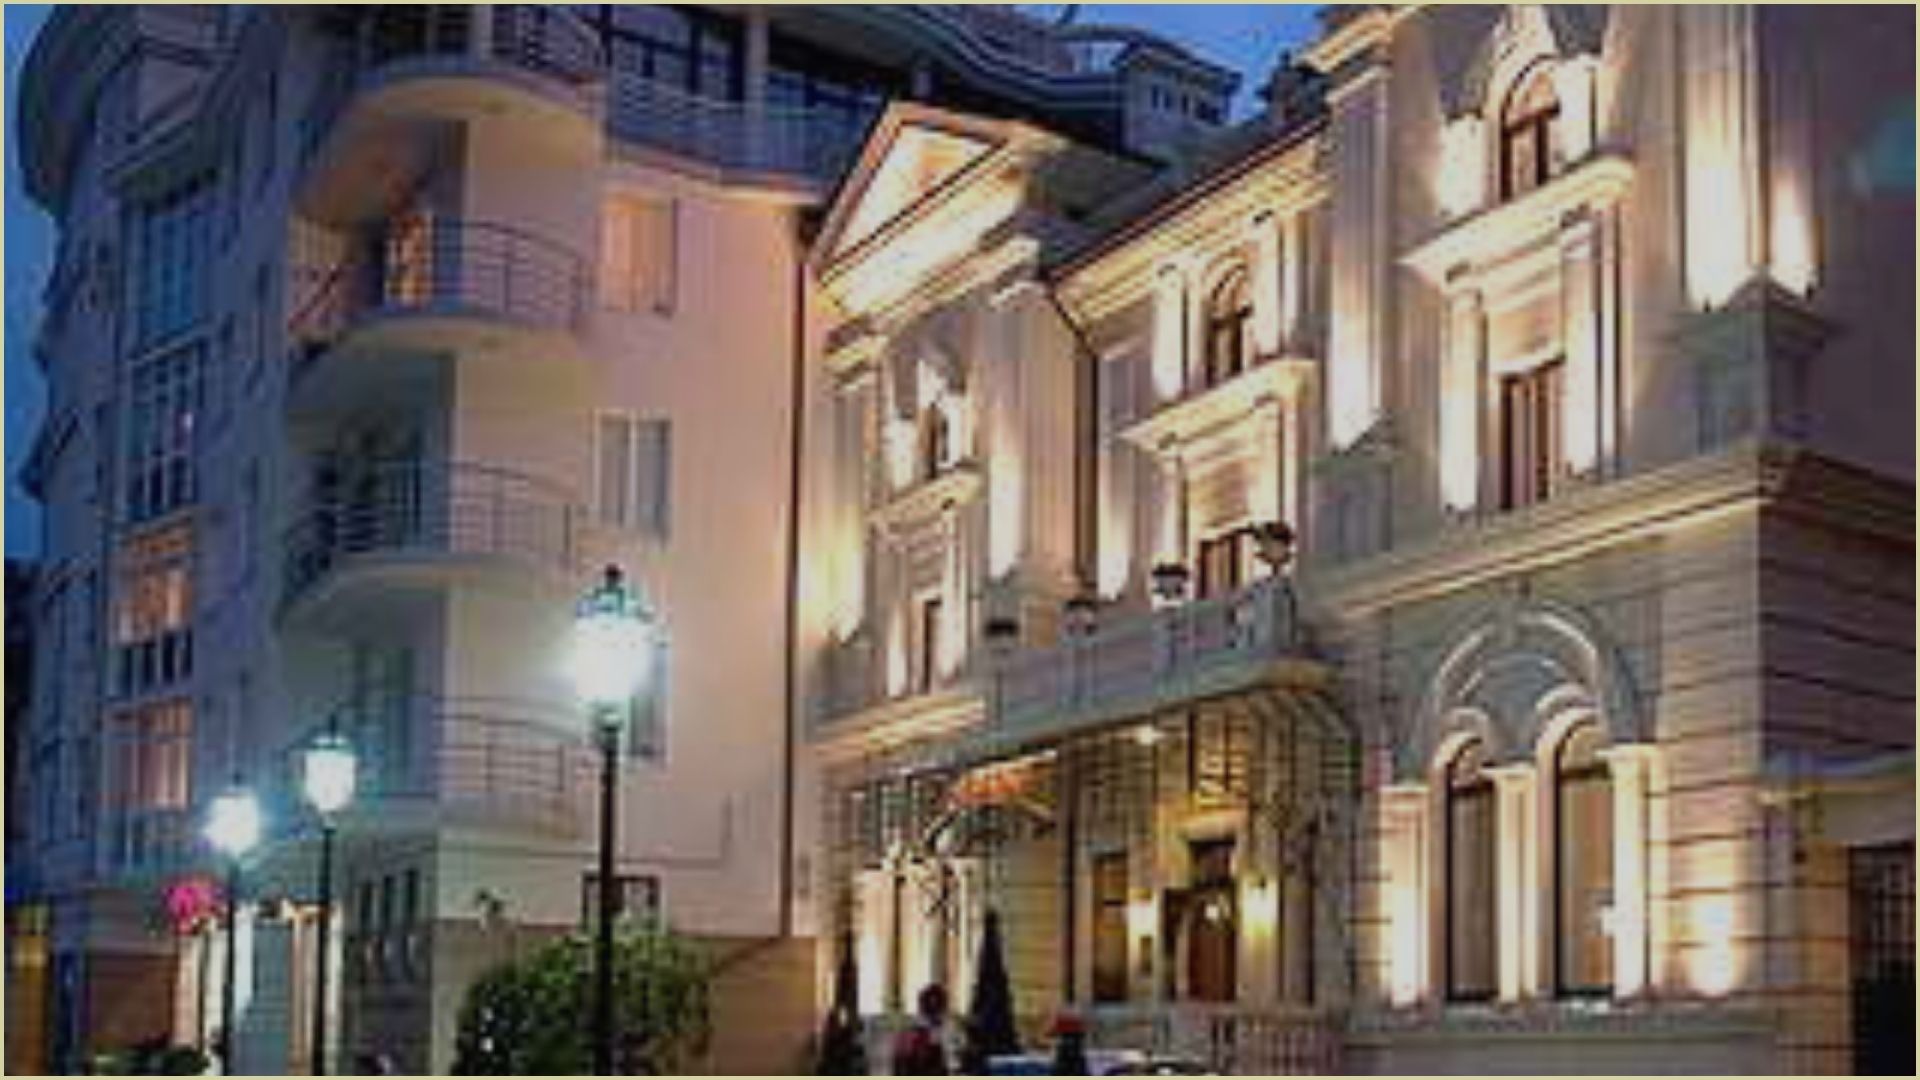 Otrada Hotel - Топ пятизвездочных отелей в Одессе